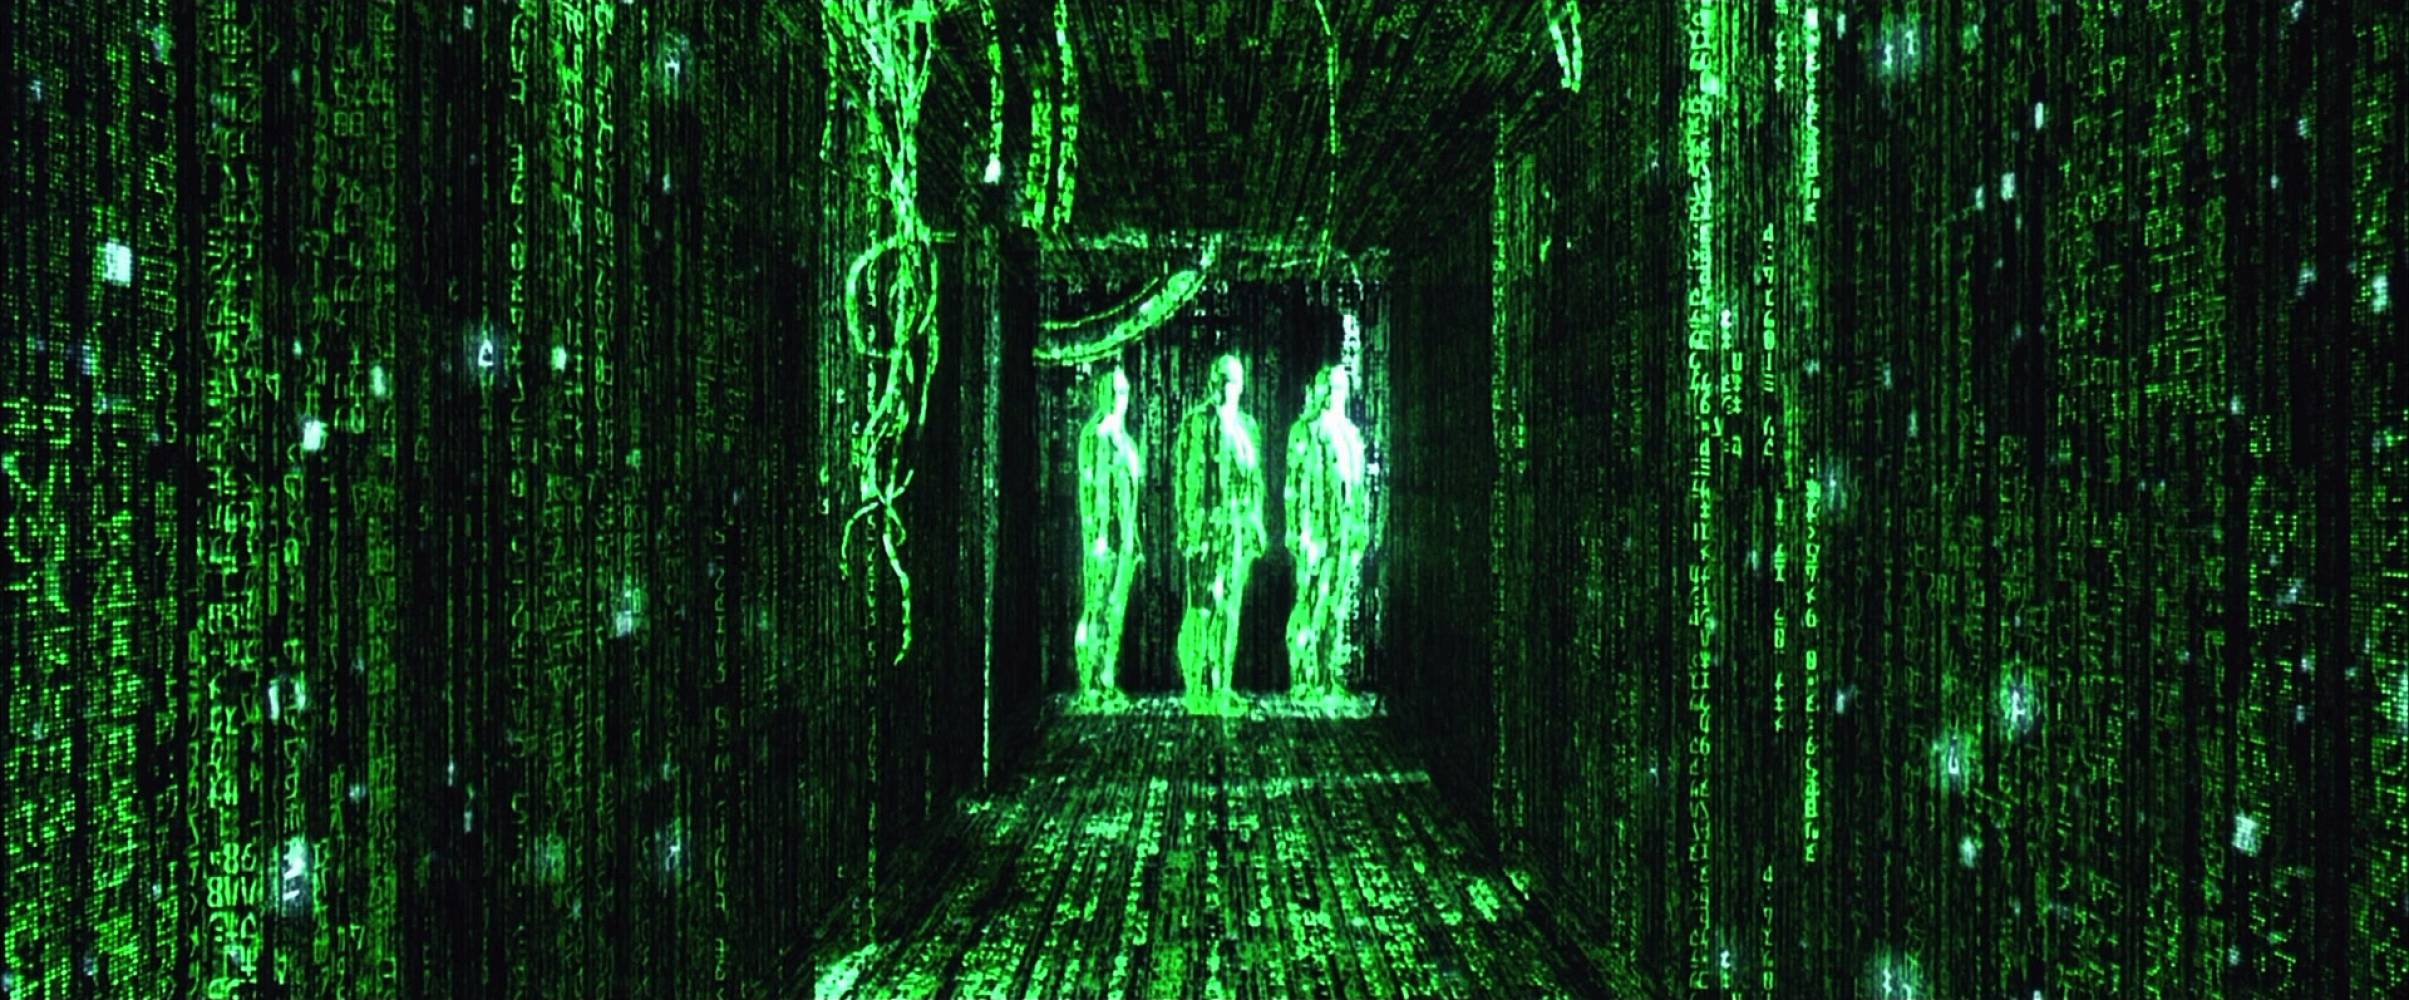 "Матрицата" може да предизвика нова киберреволюция на големия екран